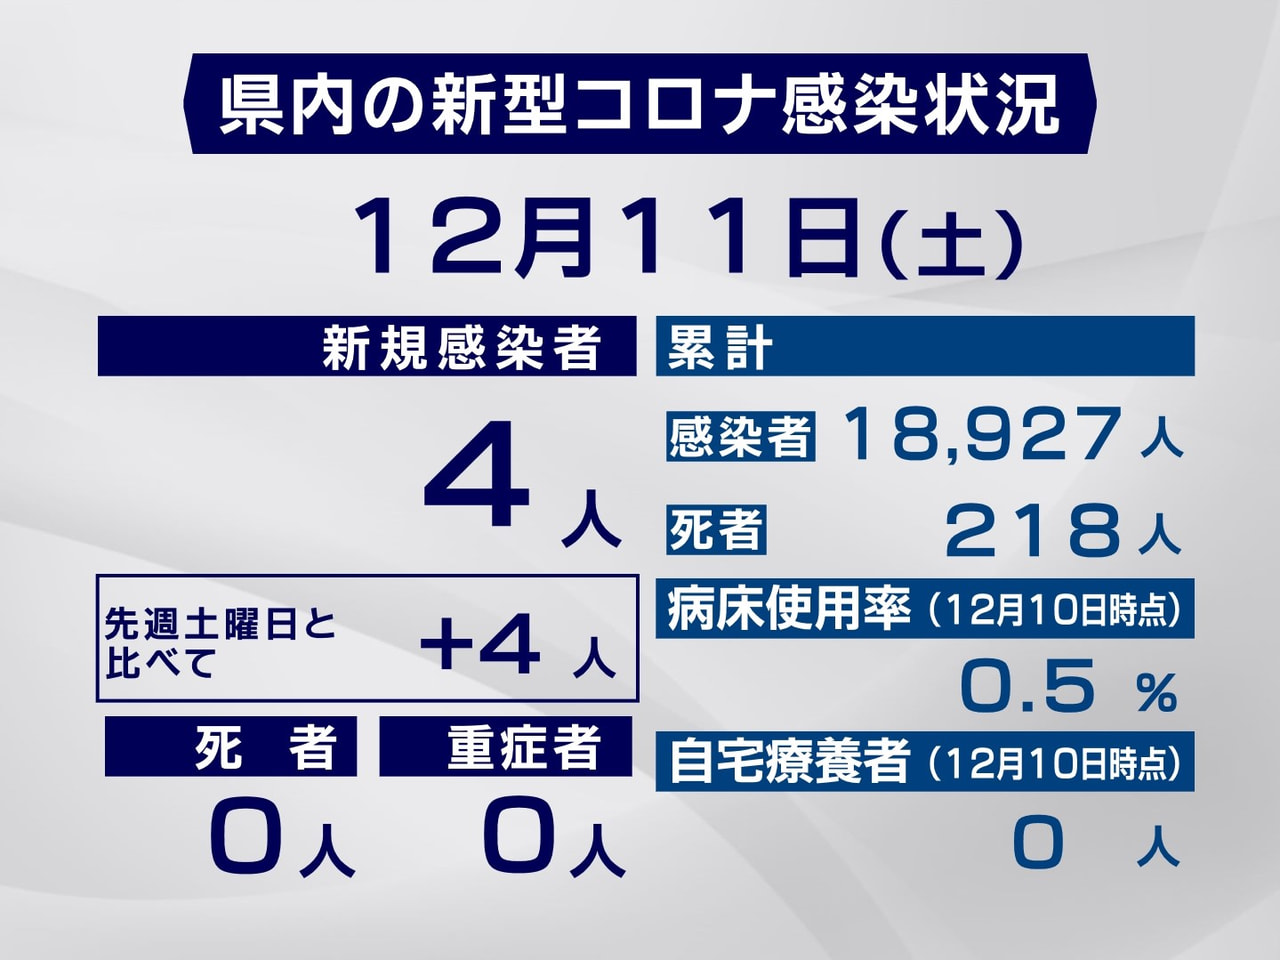 岐阜県は、１１日、新型コロナウイルスの感染者が新たに４人確認されたと発表しました...